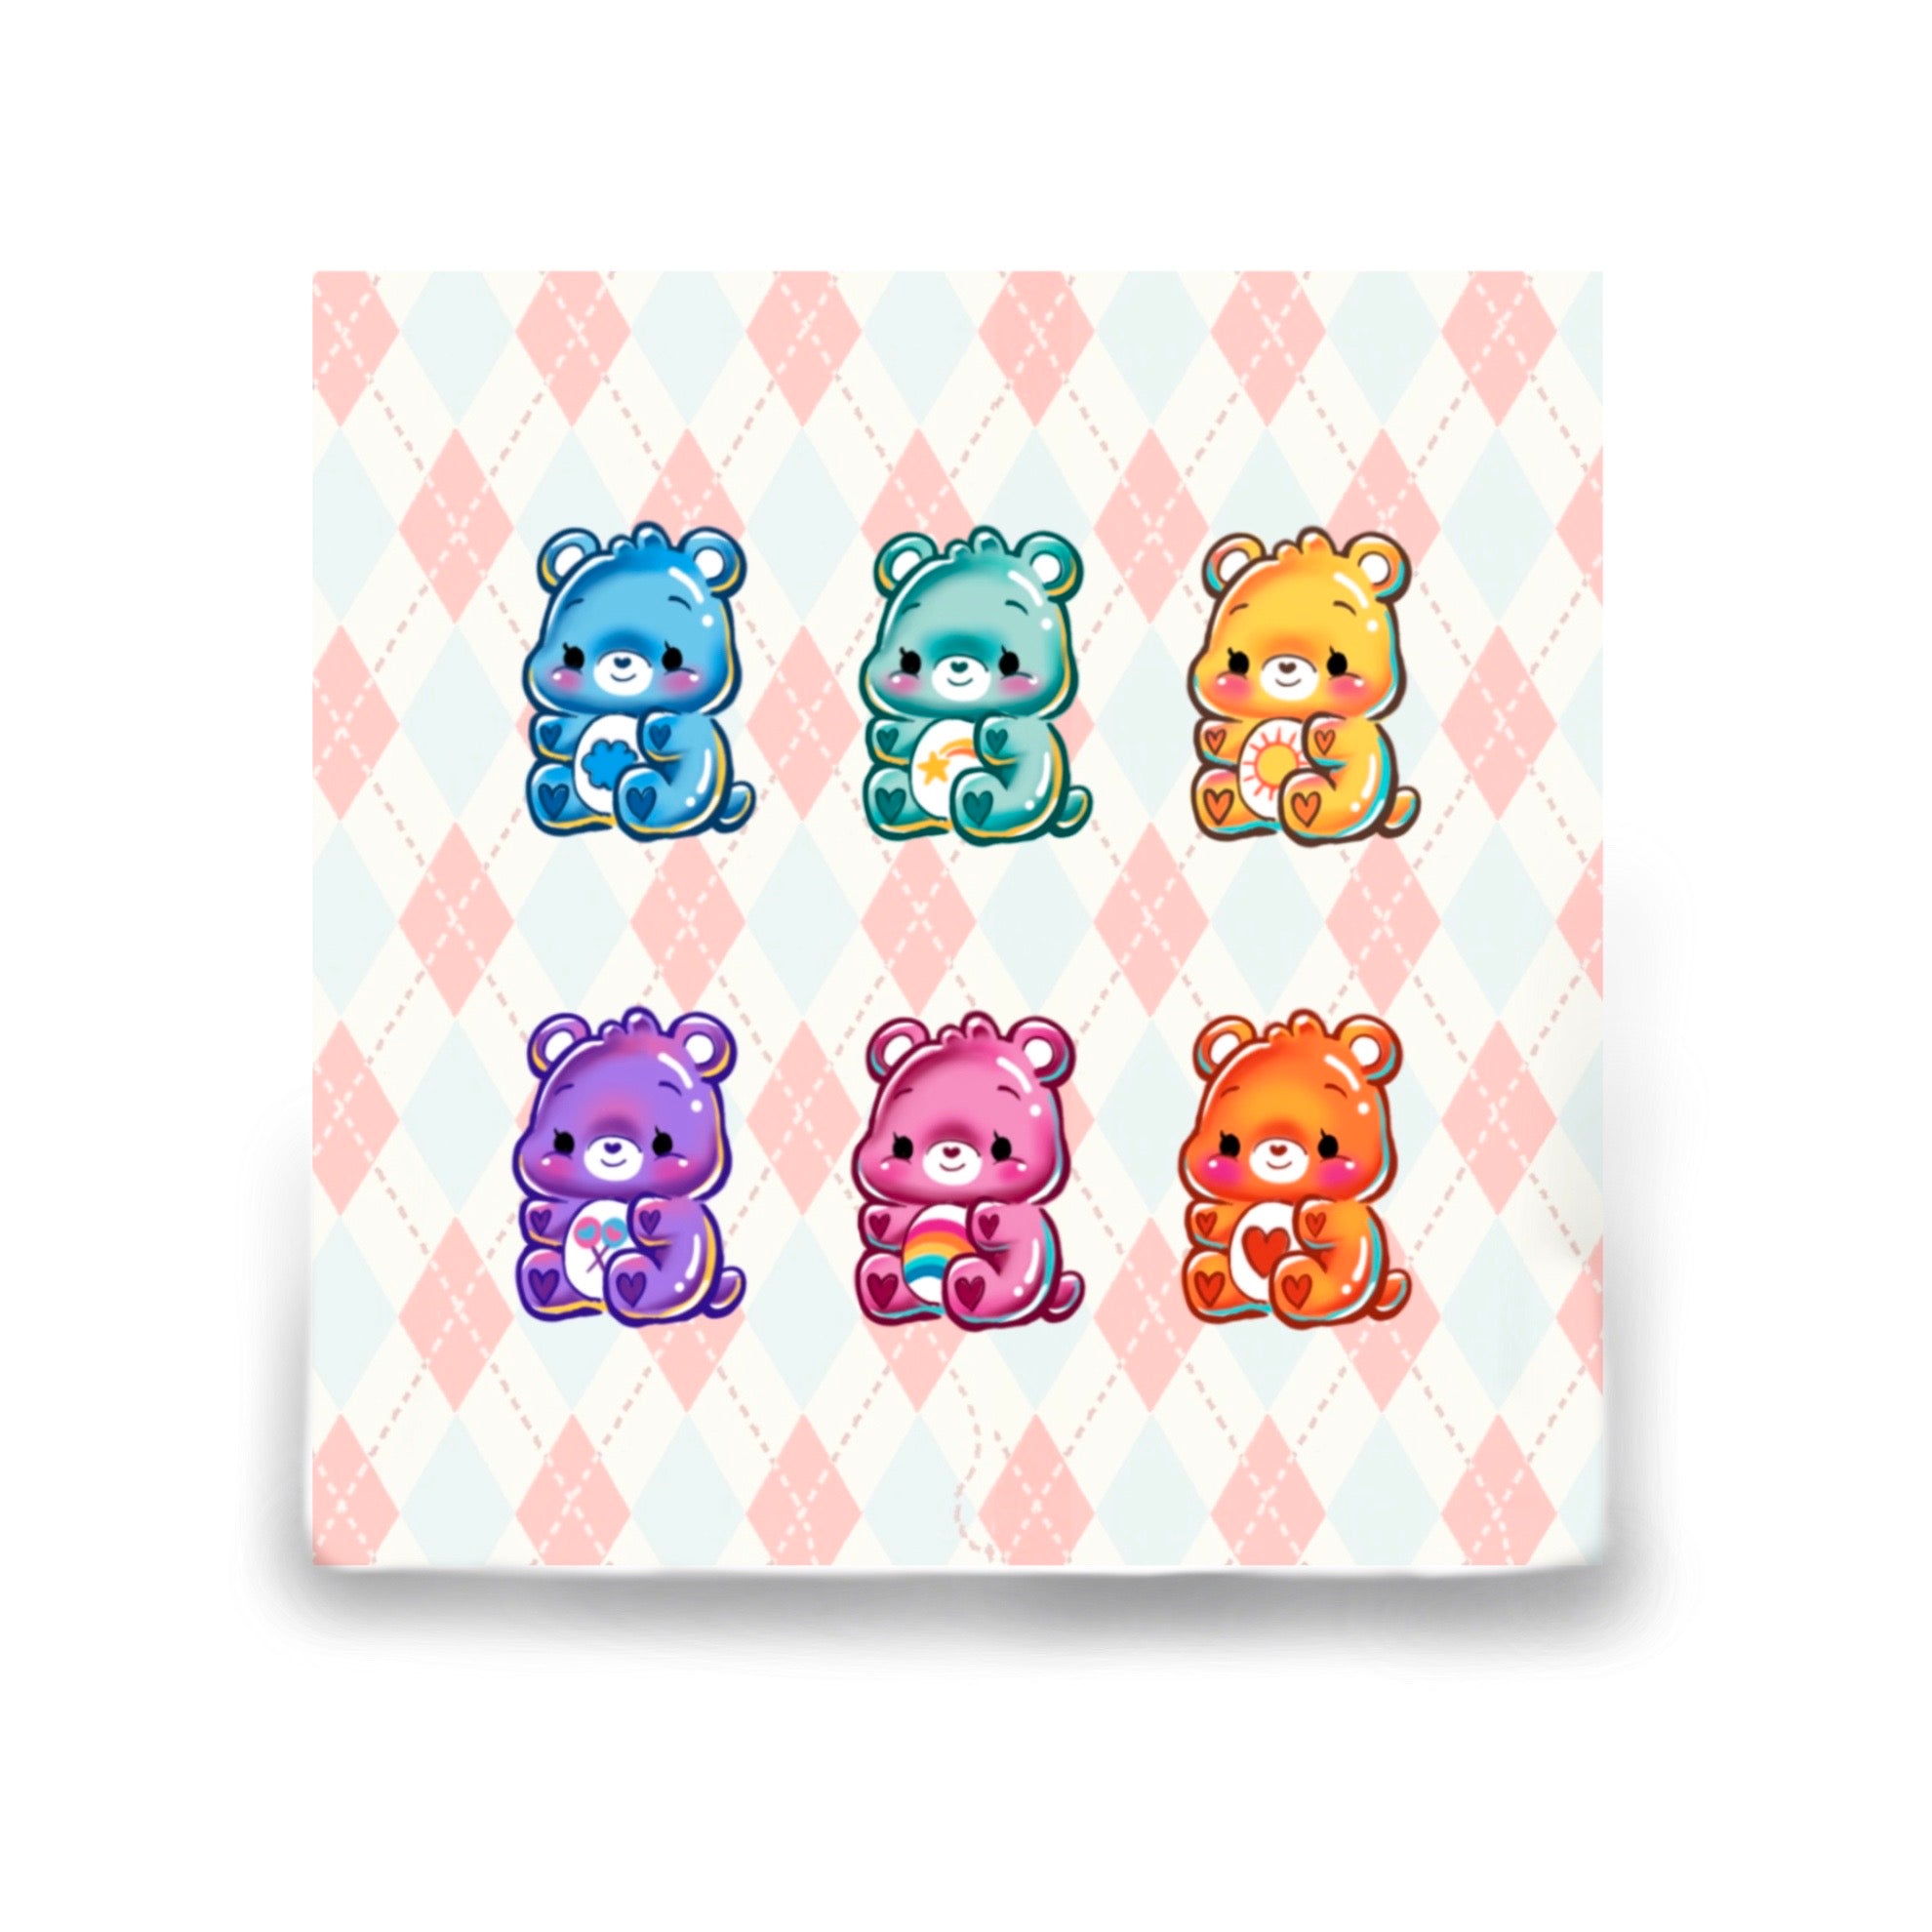 [QIQI TATTOO] Care Bear Gummies Set - Sticker Sheet